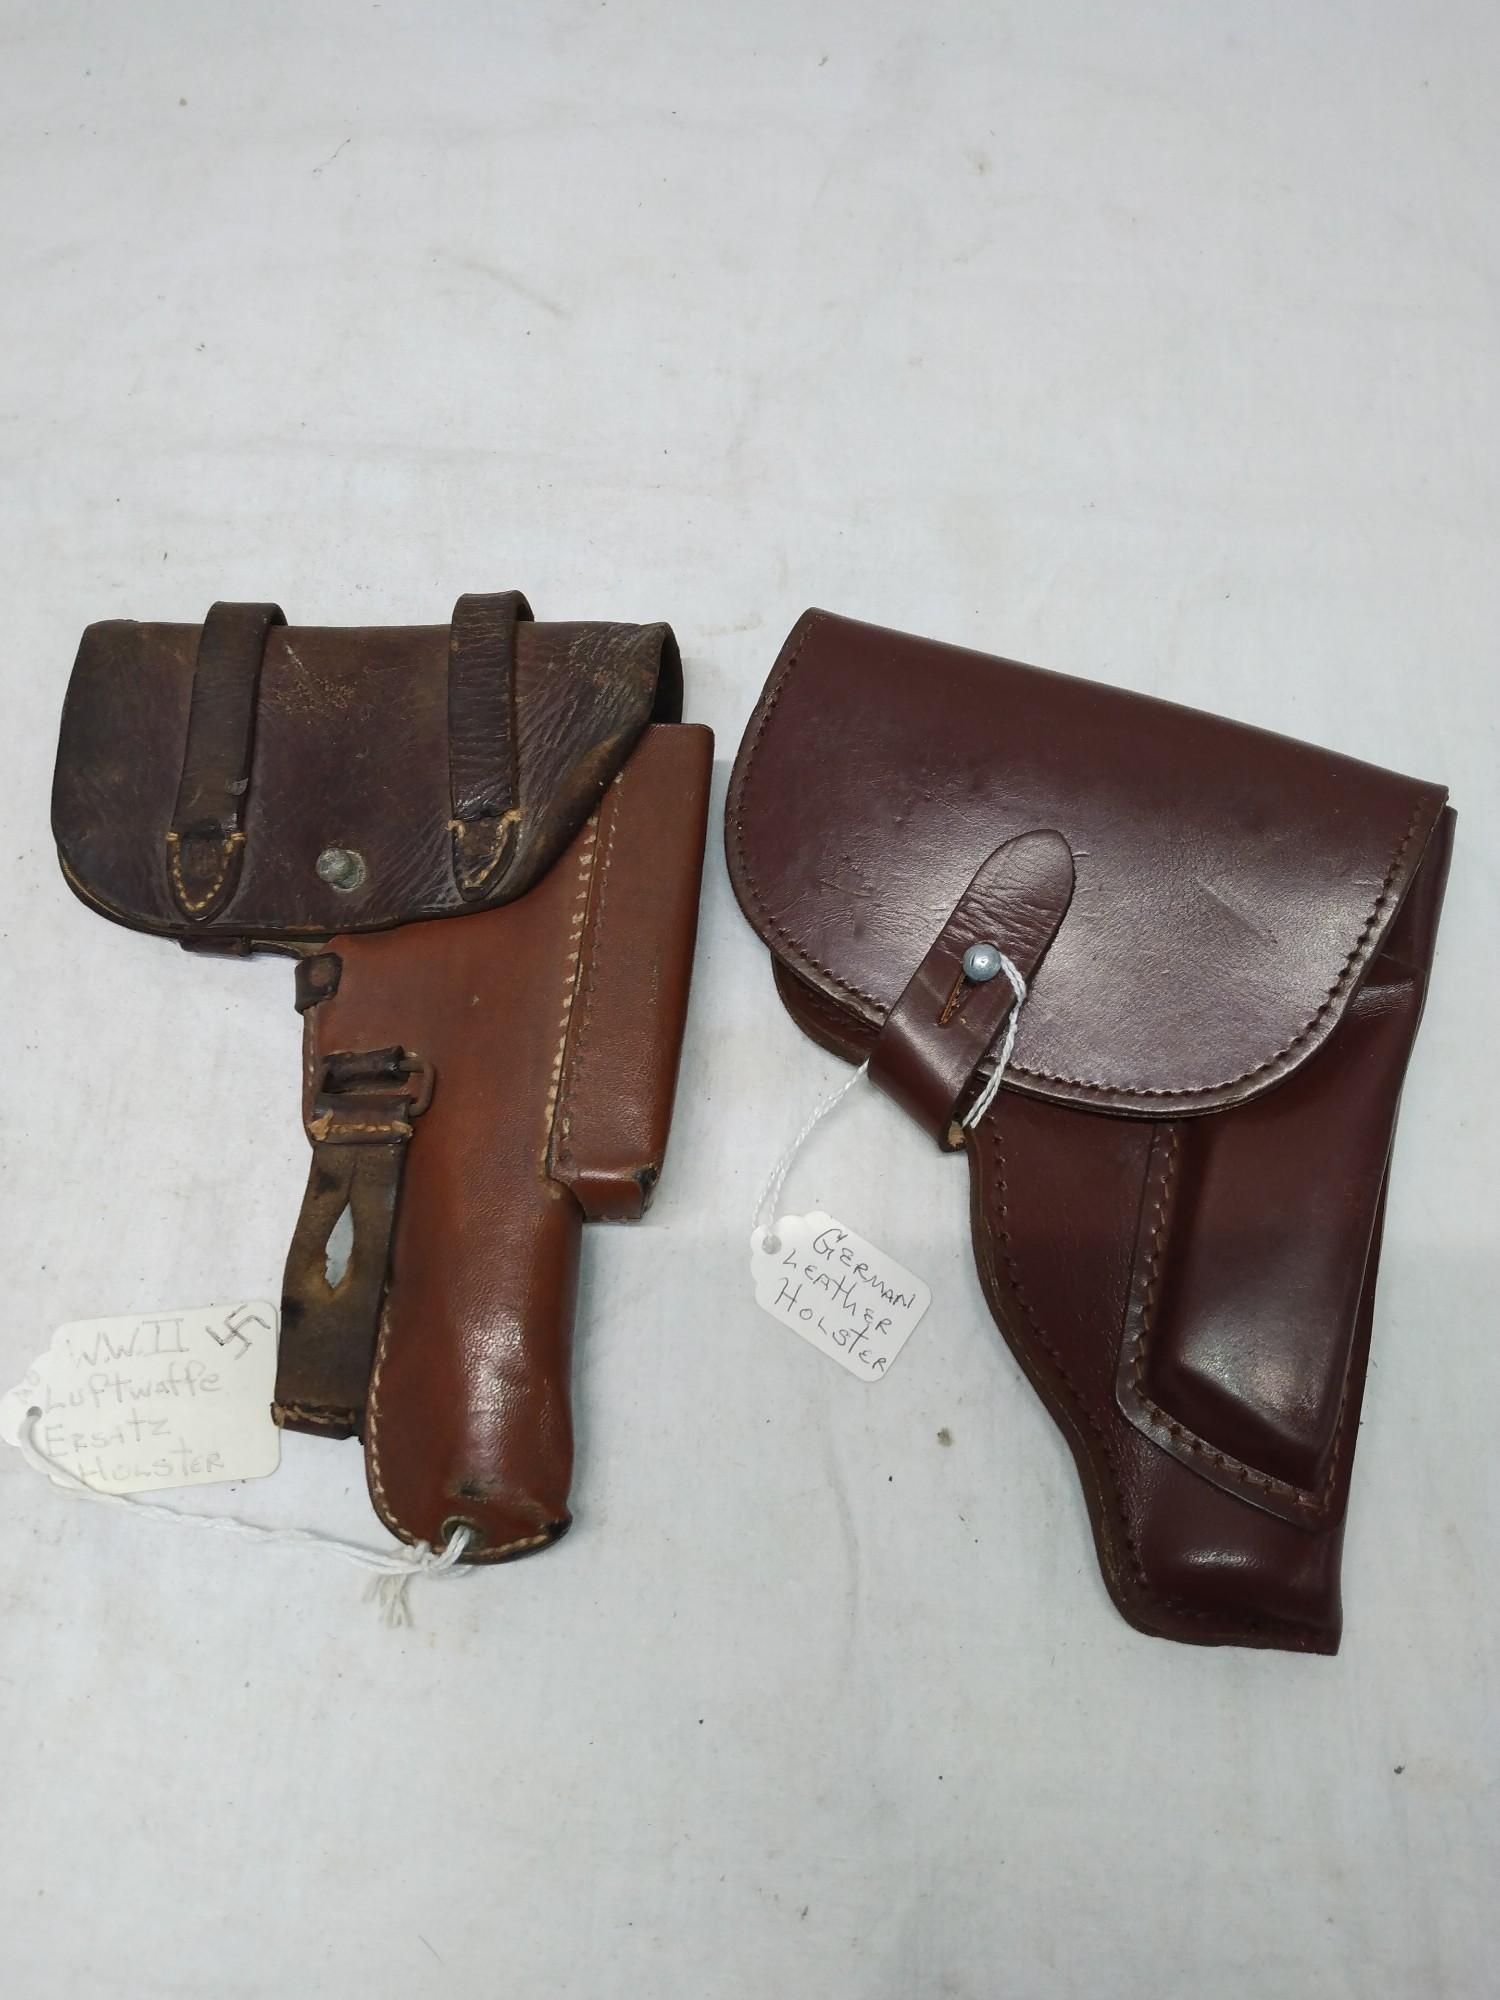 2 brown leather German holsters